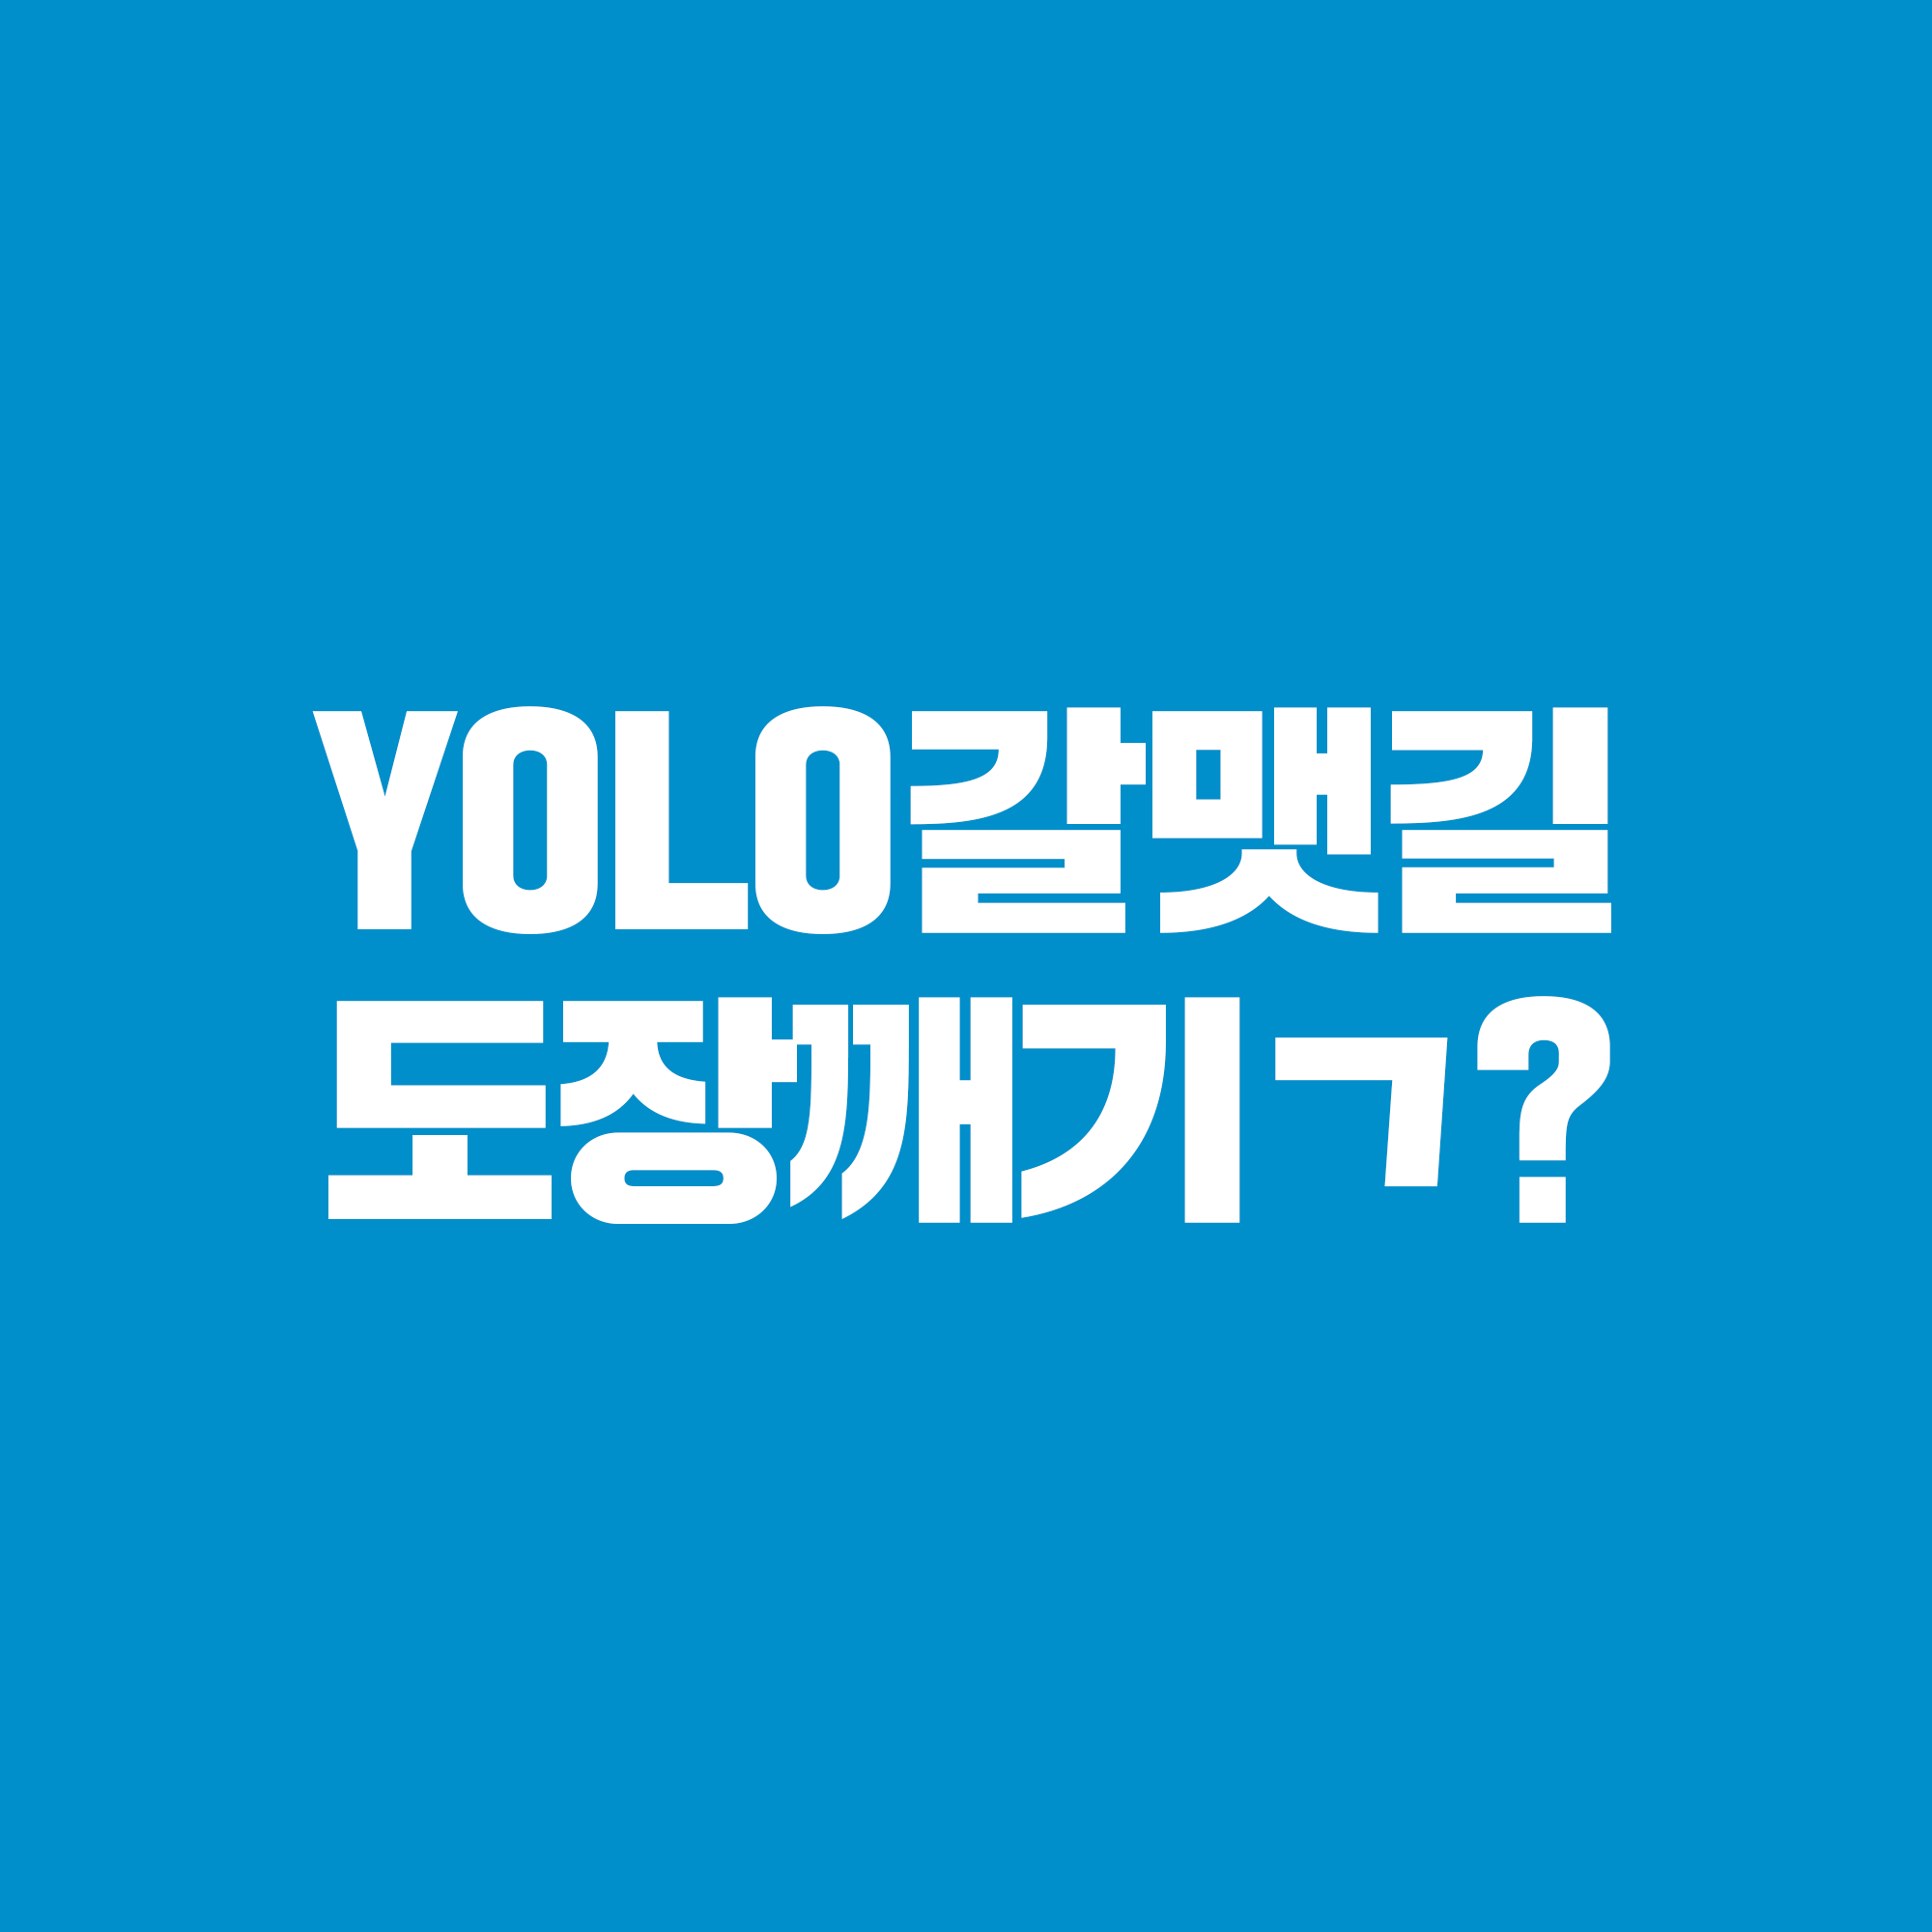 YOLO 갈맷길 소문내기 이벤트
YOLO갈맷길 도장깨기ㄱ?